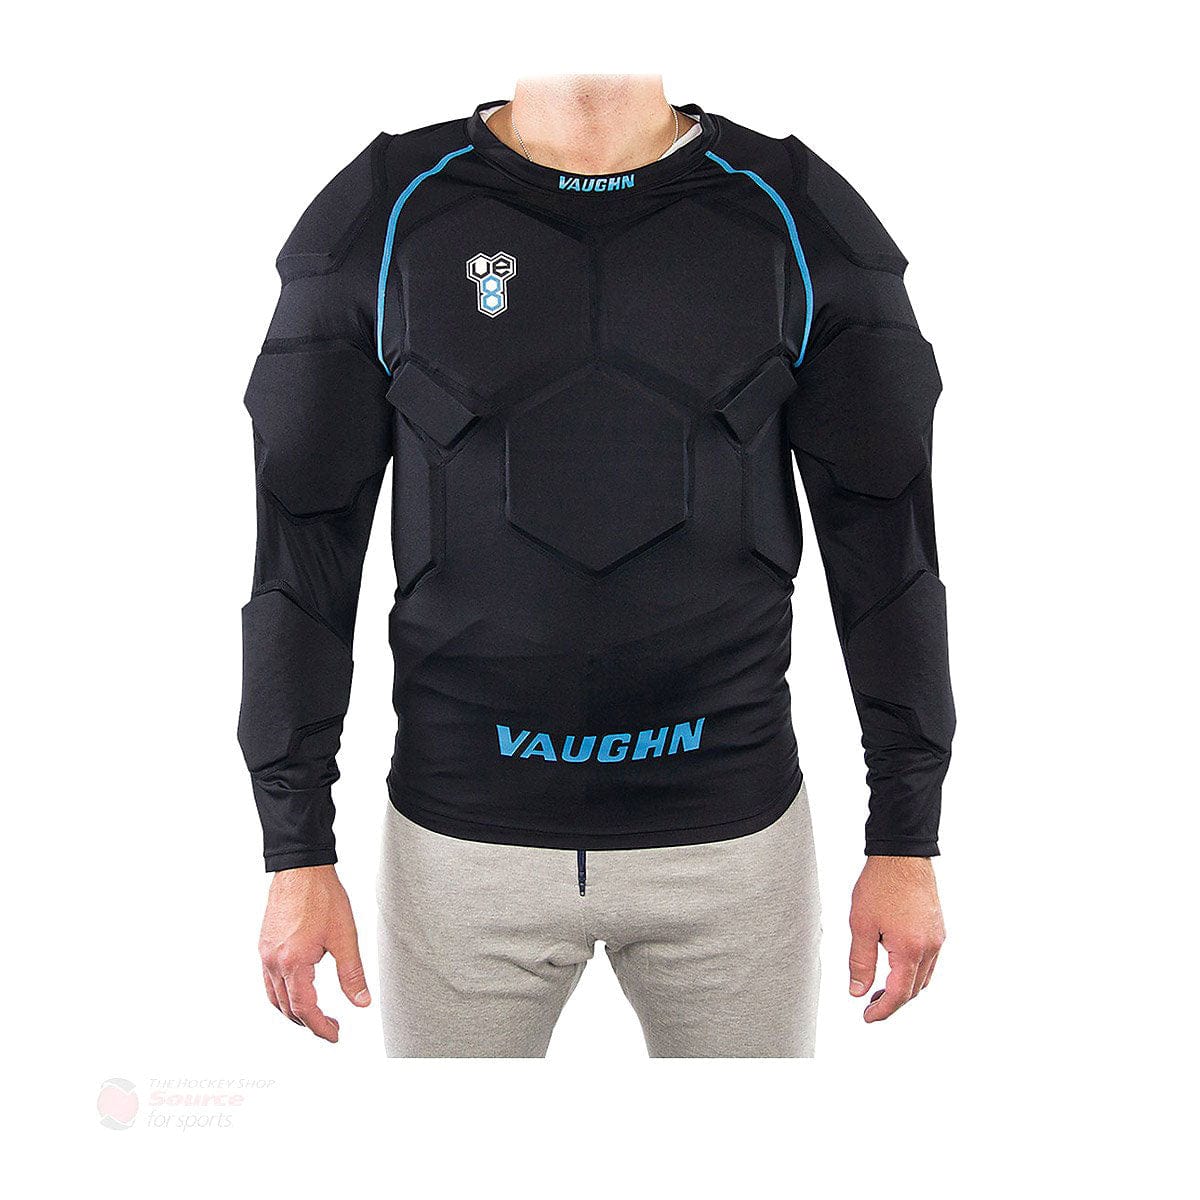 Vaughn Velocity VE8 Goalie Senior Padded Shirt